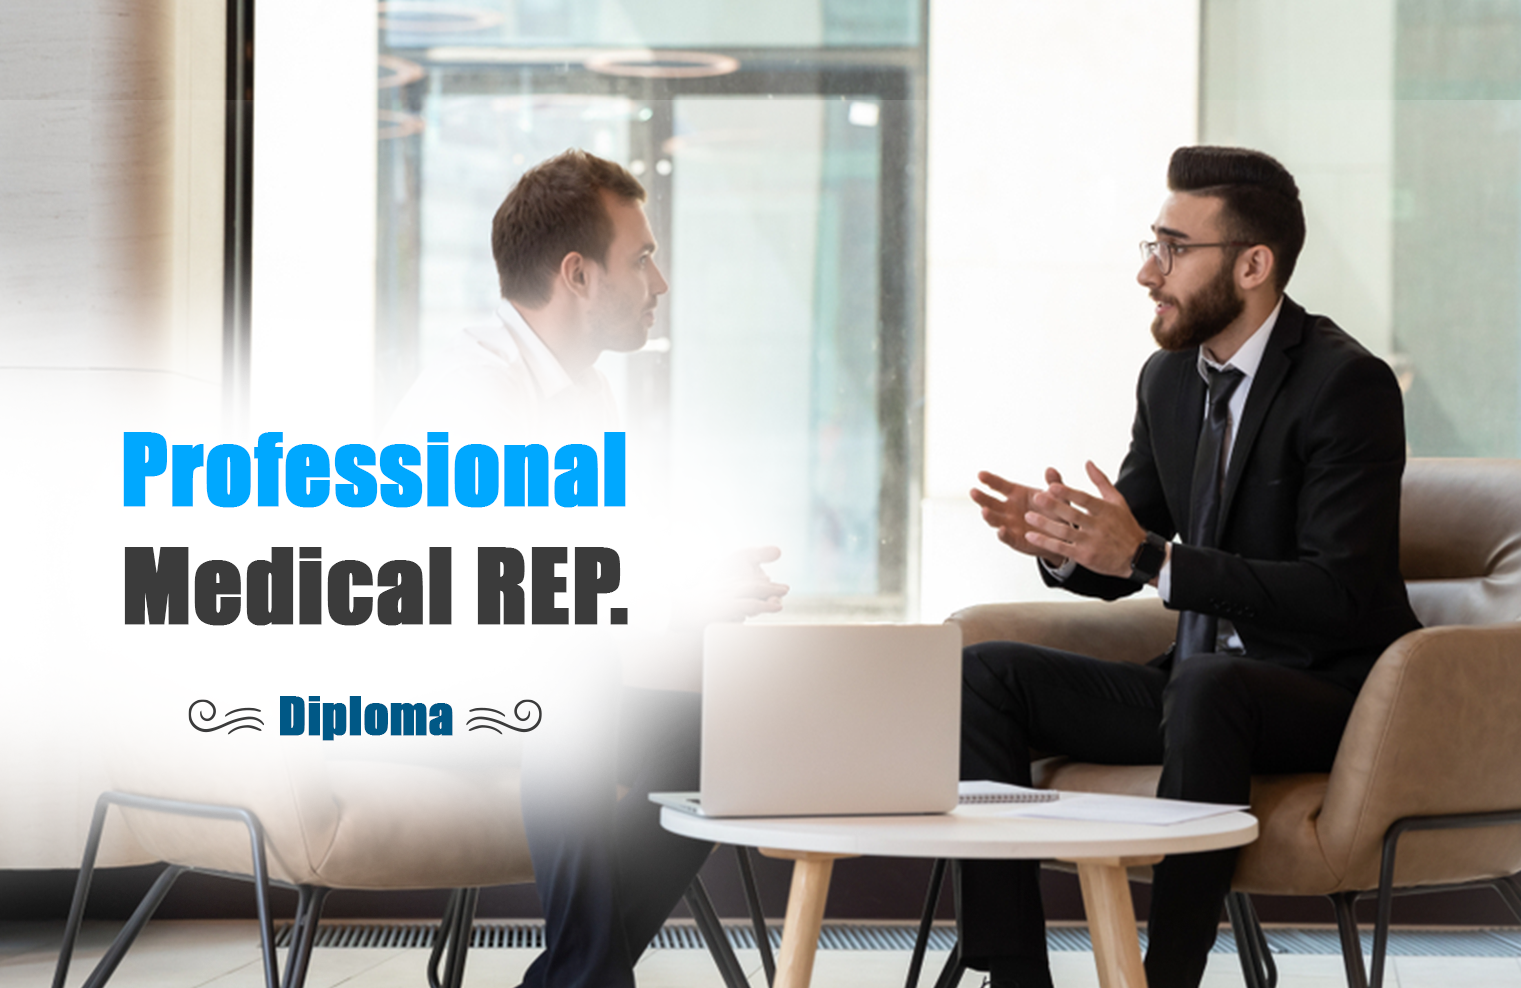 Professional Medical Representative Diploma